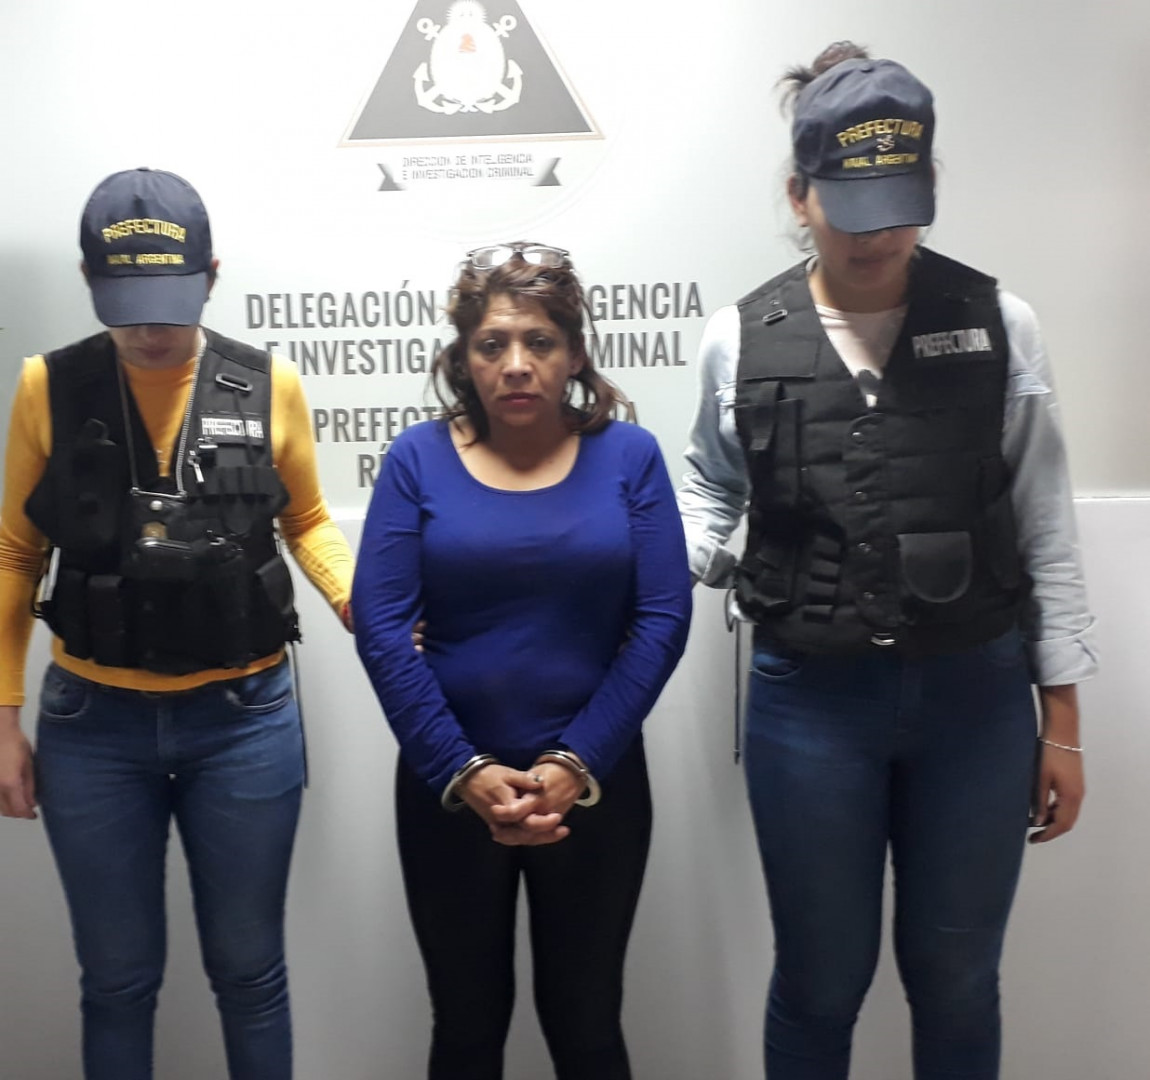 Prefectura Detuvo A Una Mujer Acusada Por Homicidio Y Abuso Sexual Argentinagobar 3843